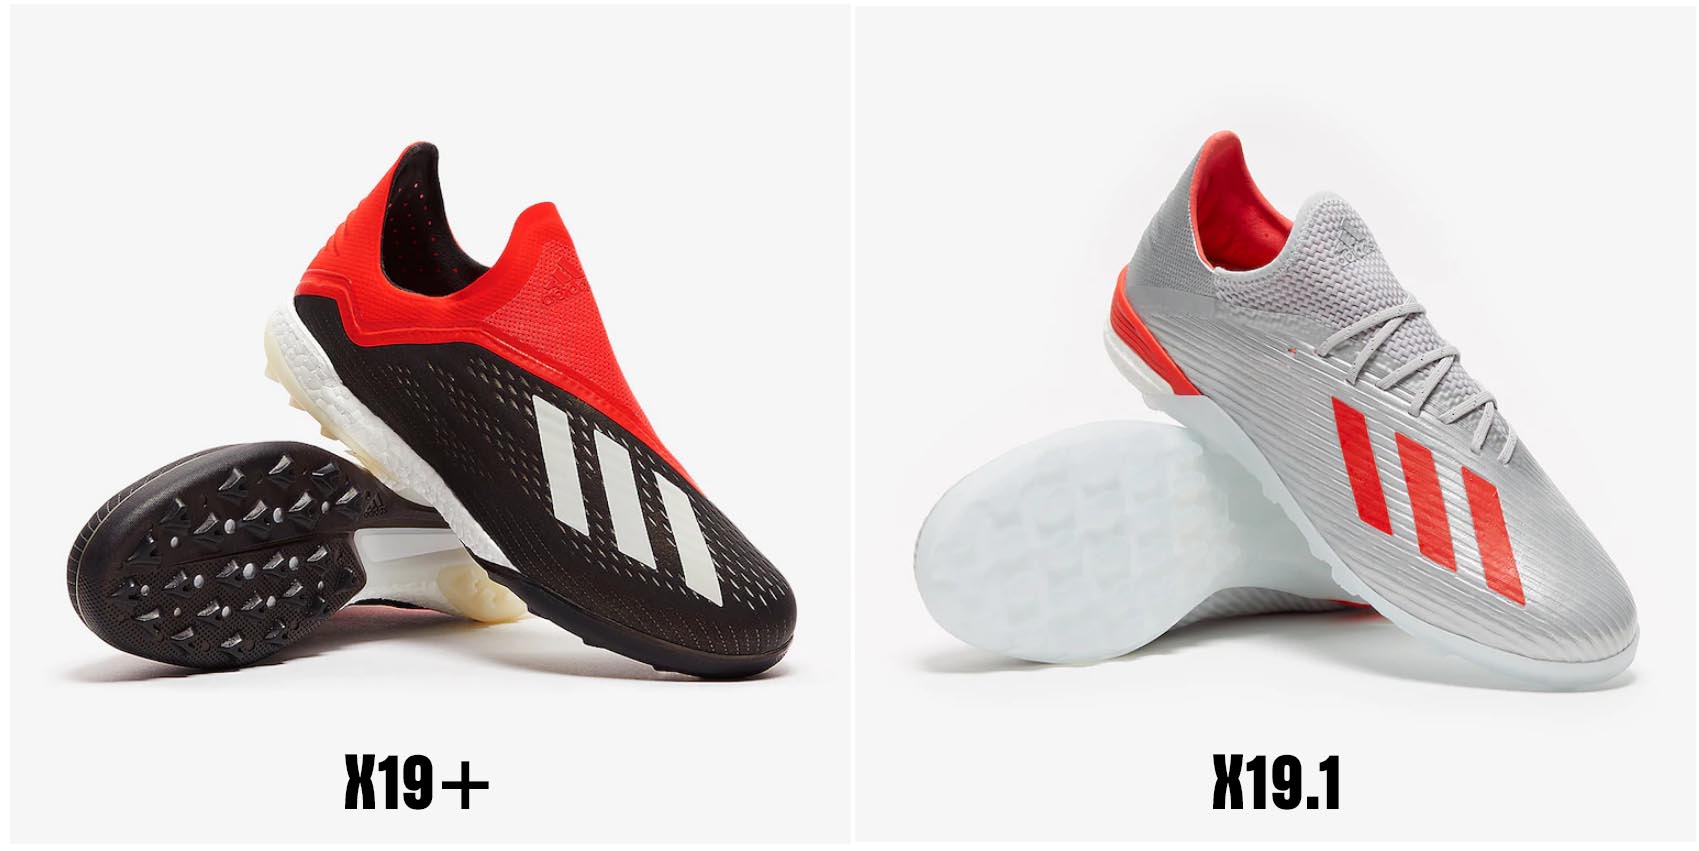 Một số mẫu giày sân cỏ nhân tạo cao cấp (Top-End) có da giống giày của cầu thủ chuyên nghiệp